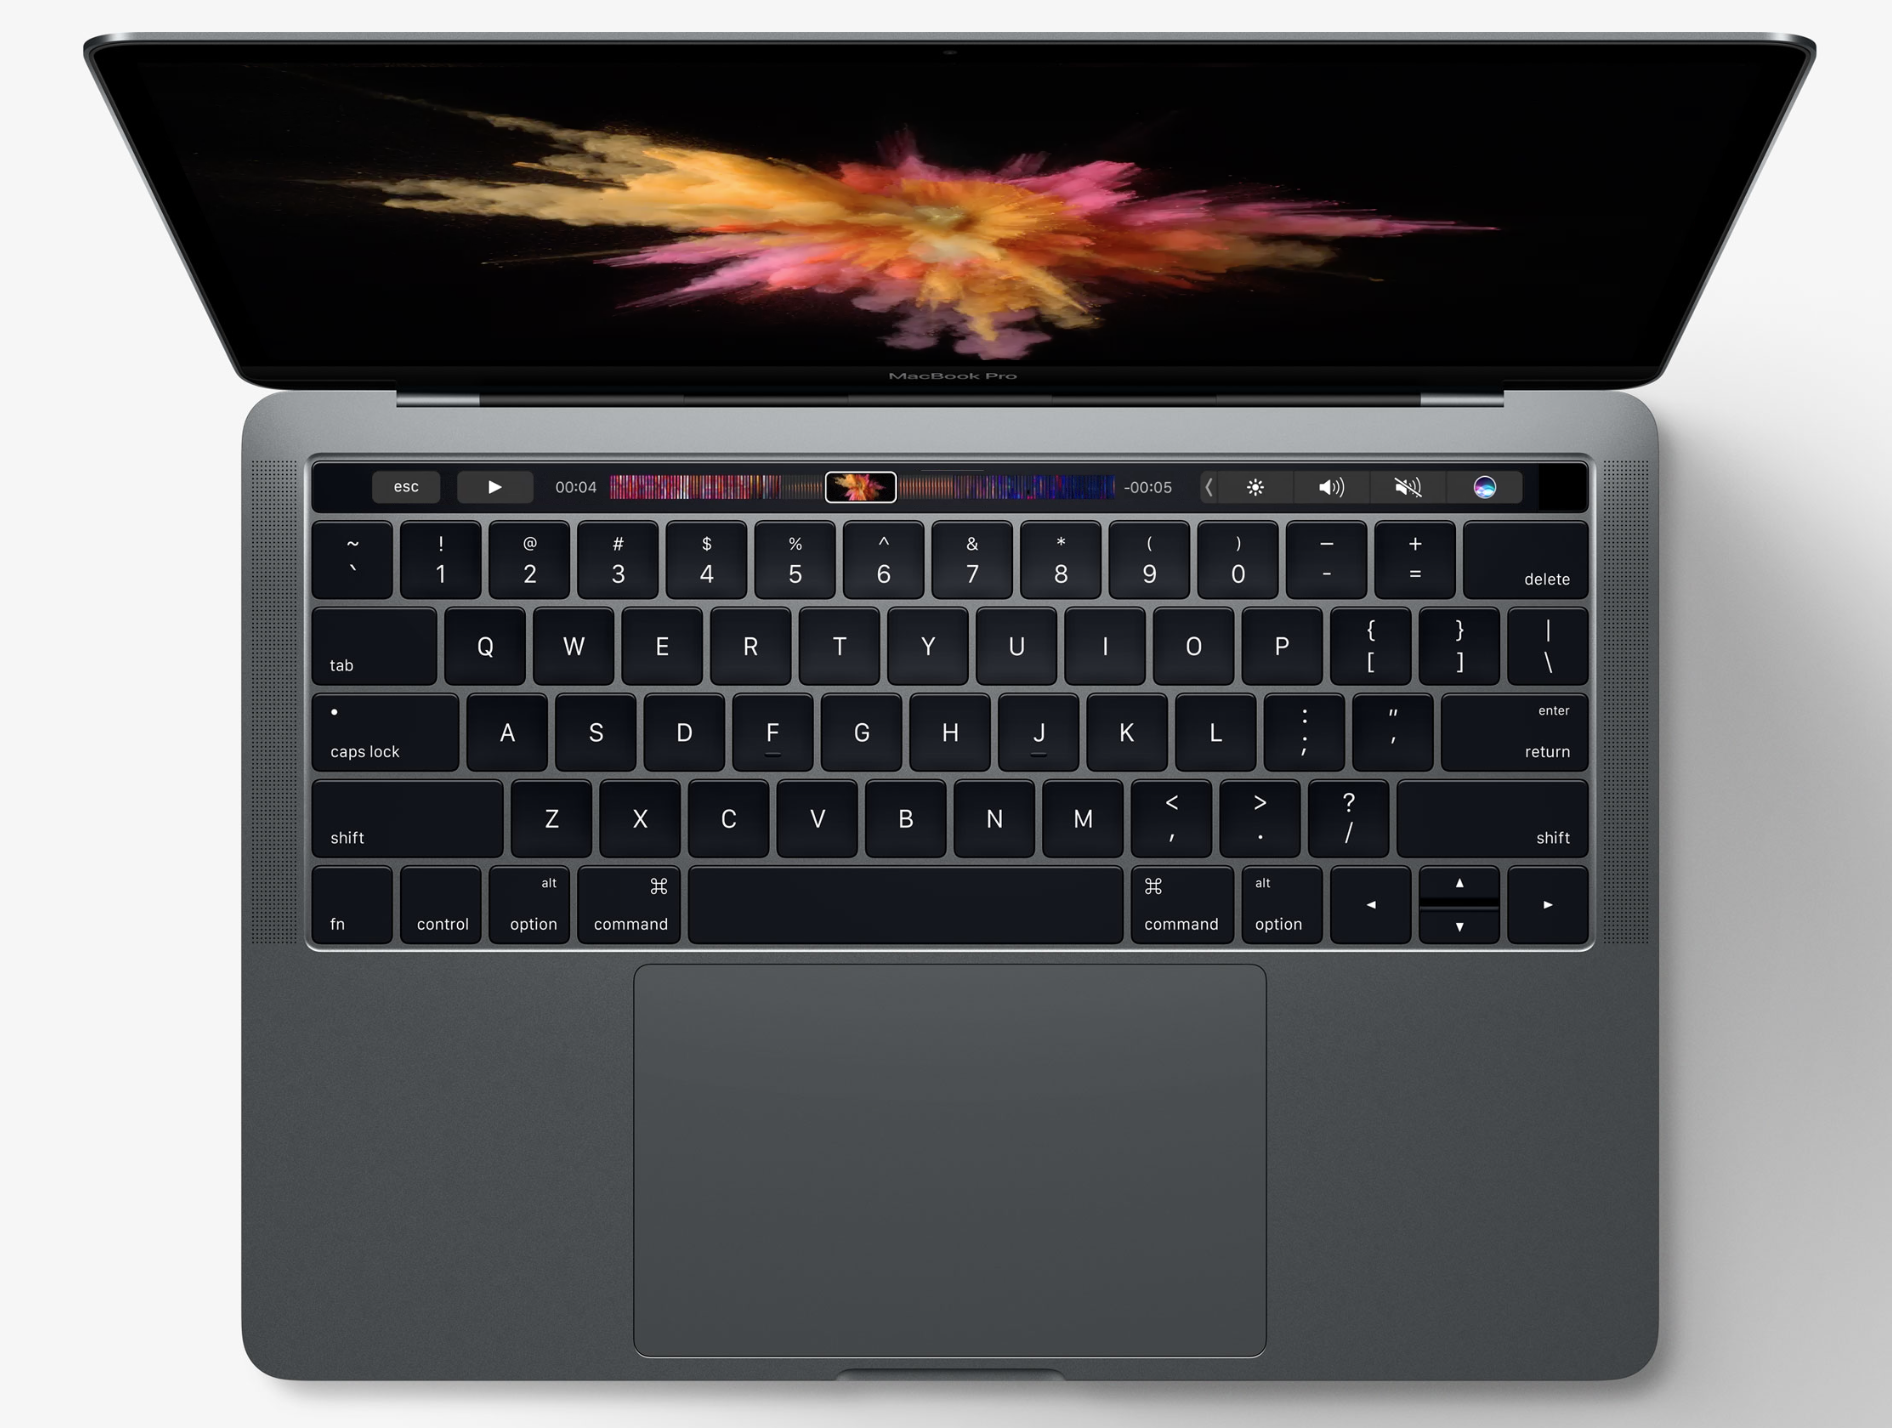 13" MacBook Pro in Space Gray